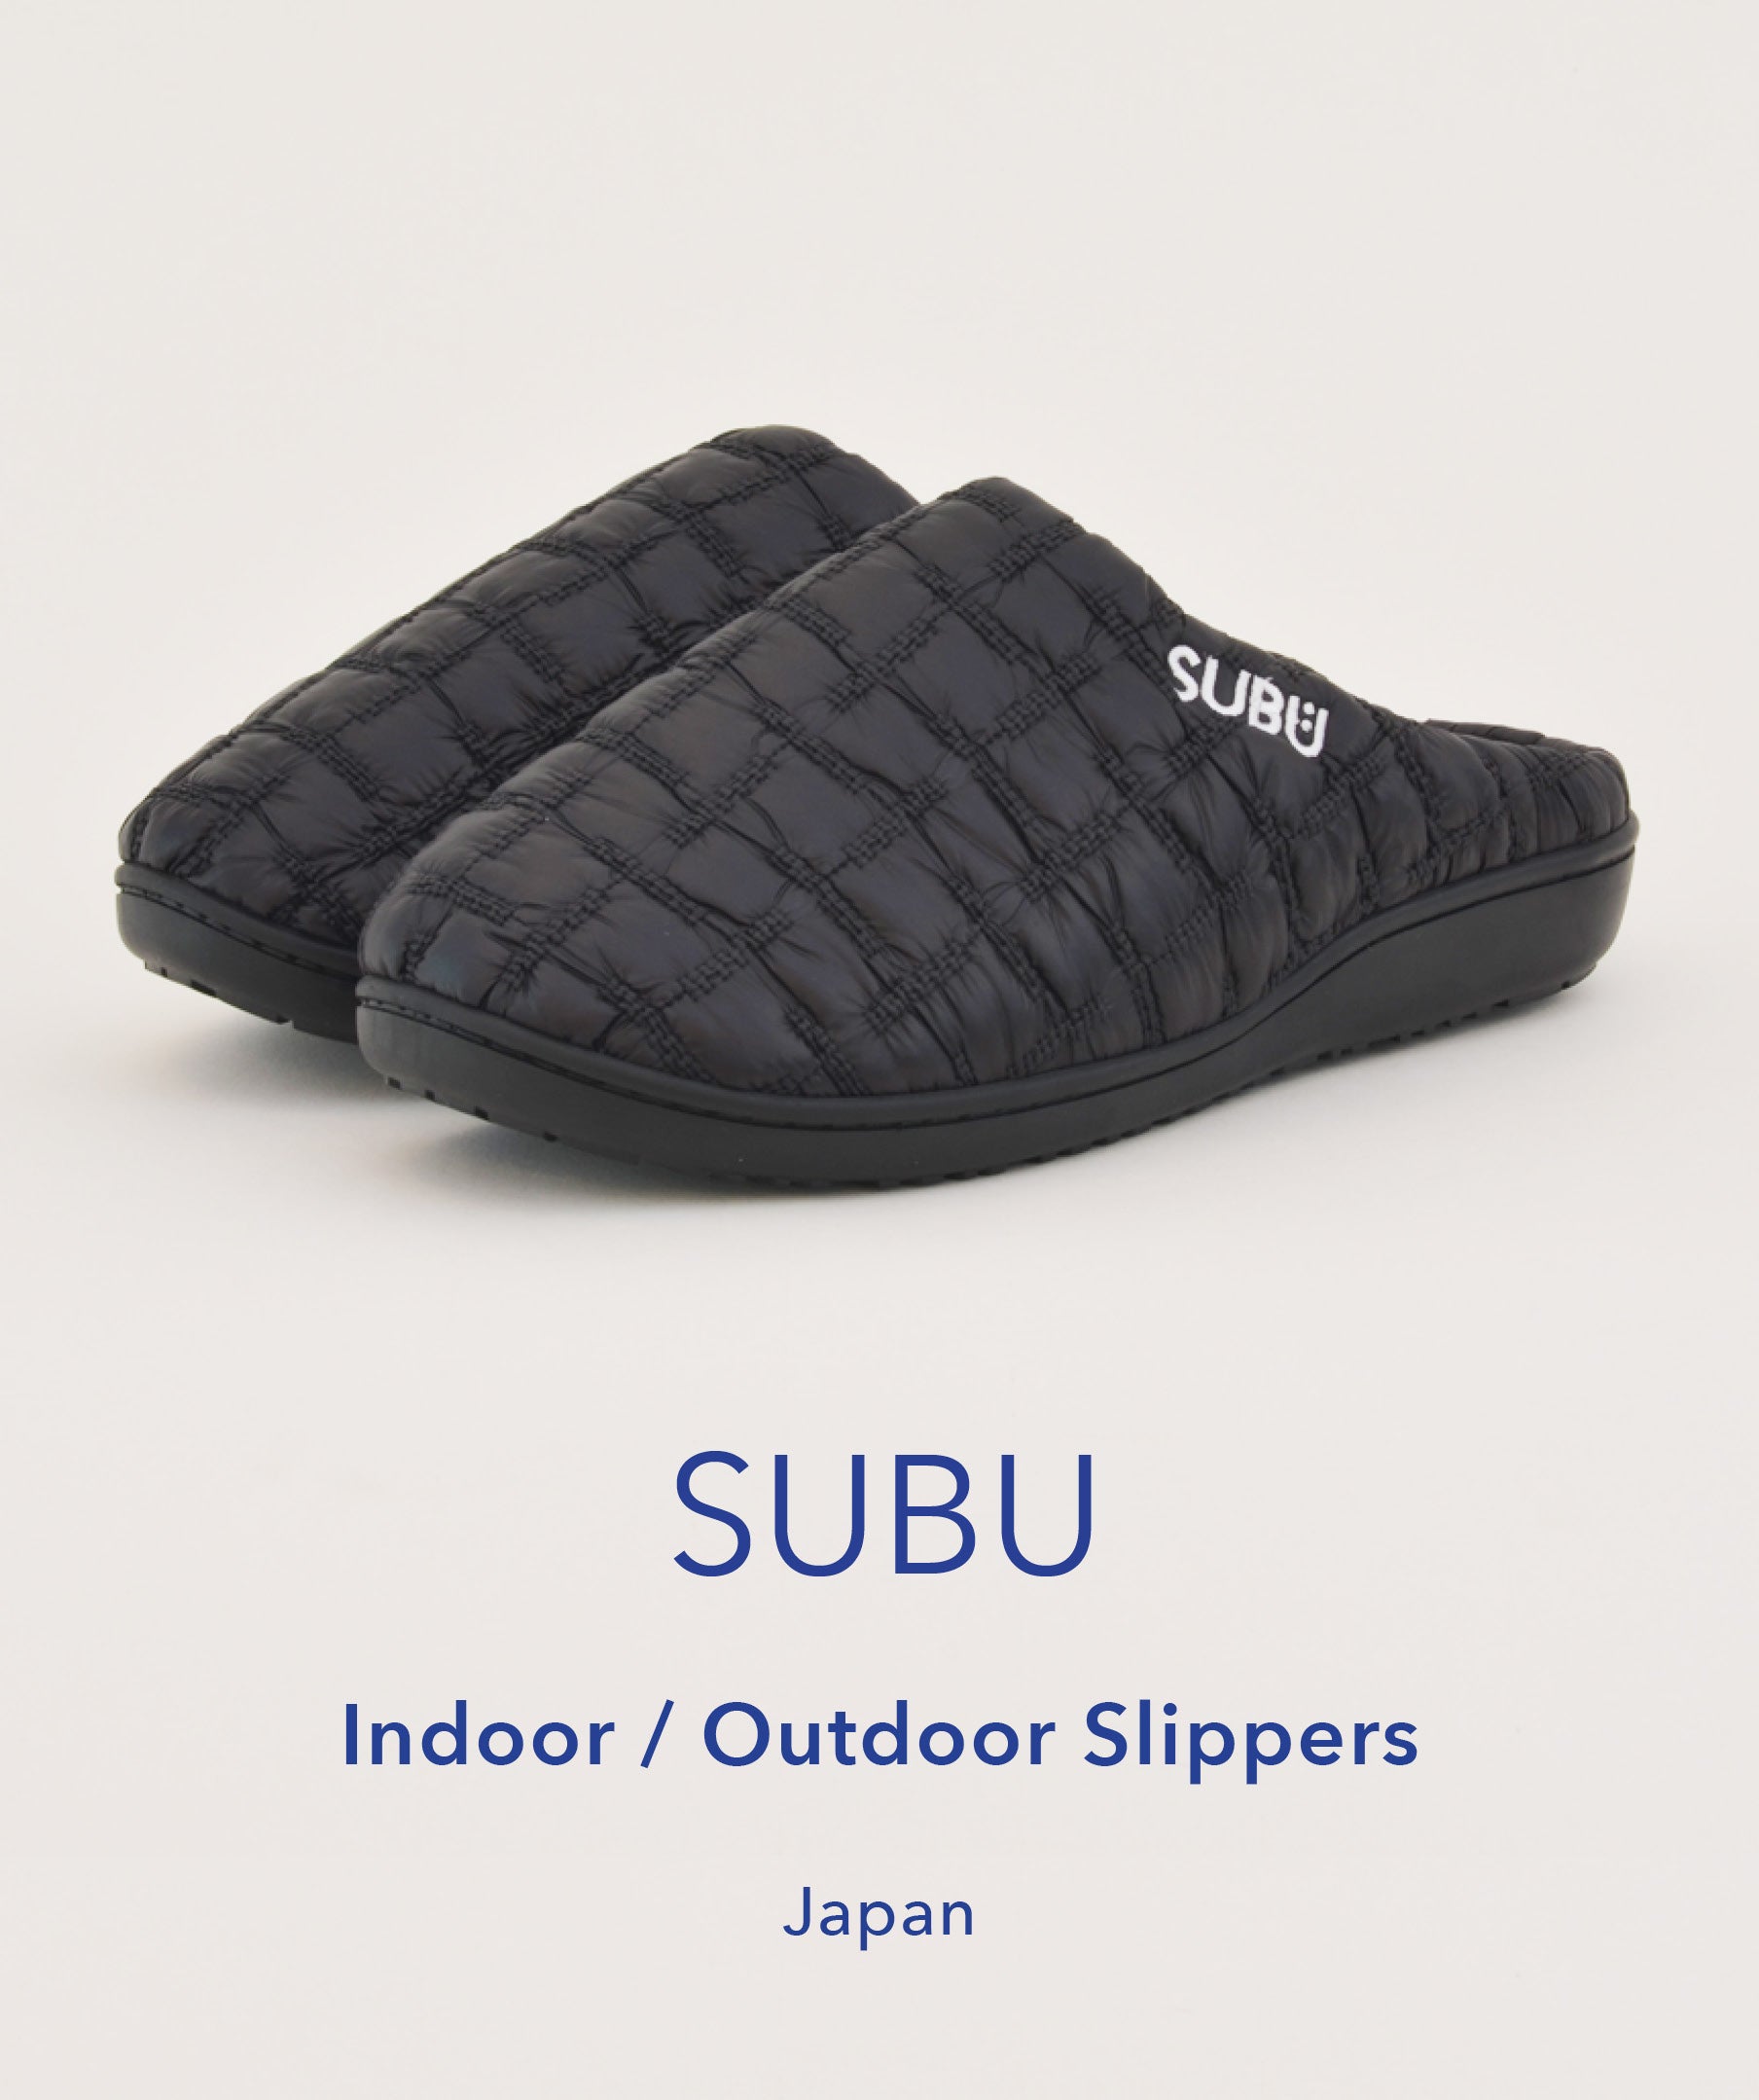 SUBU Slippers, SUBU, Slippers, Outdoor Slippers, 